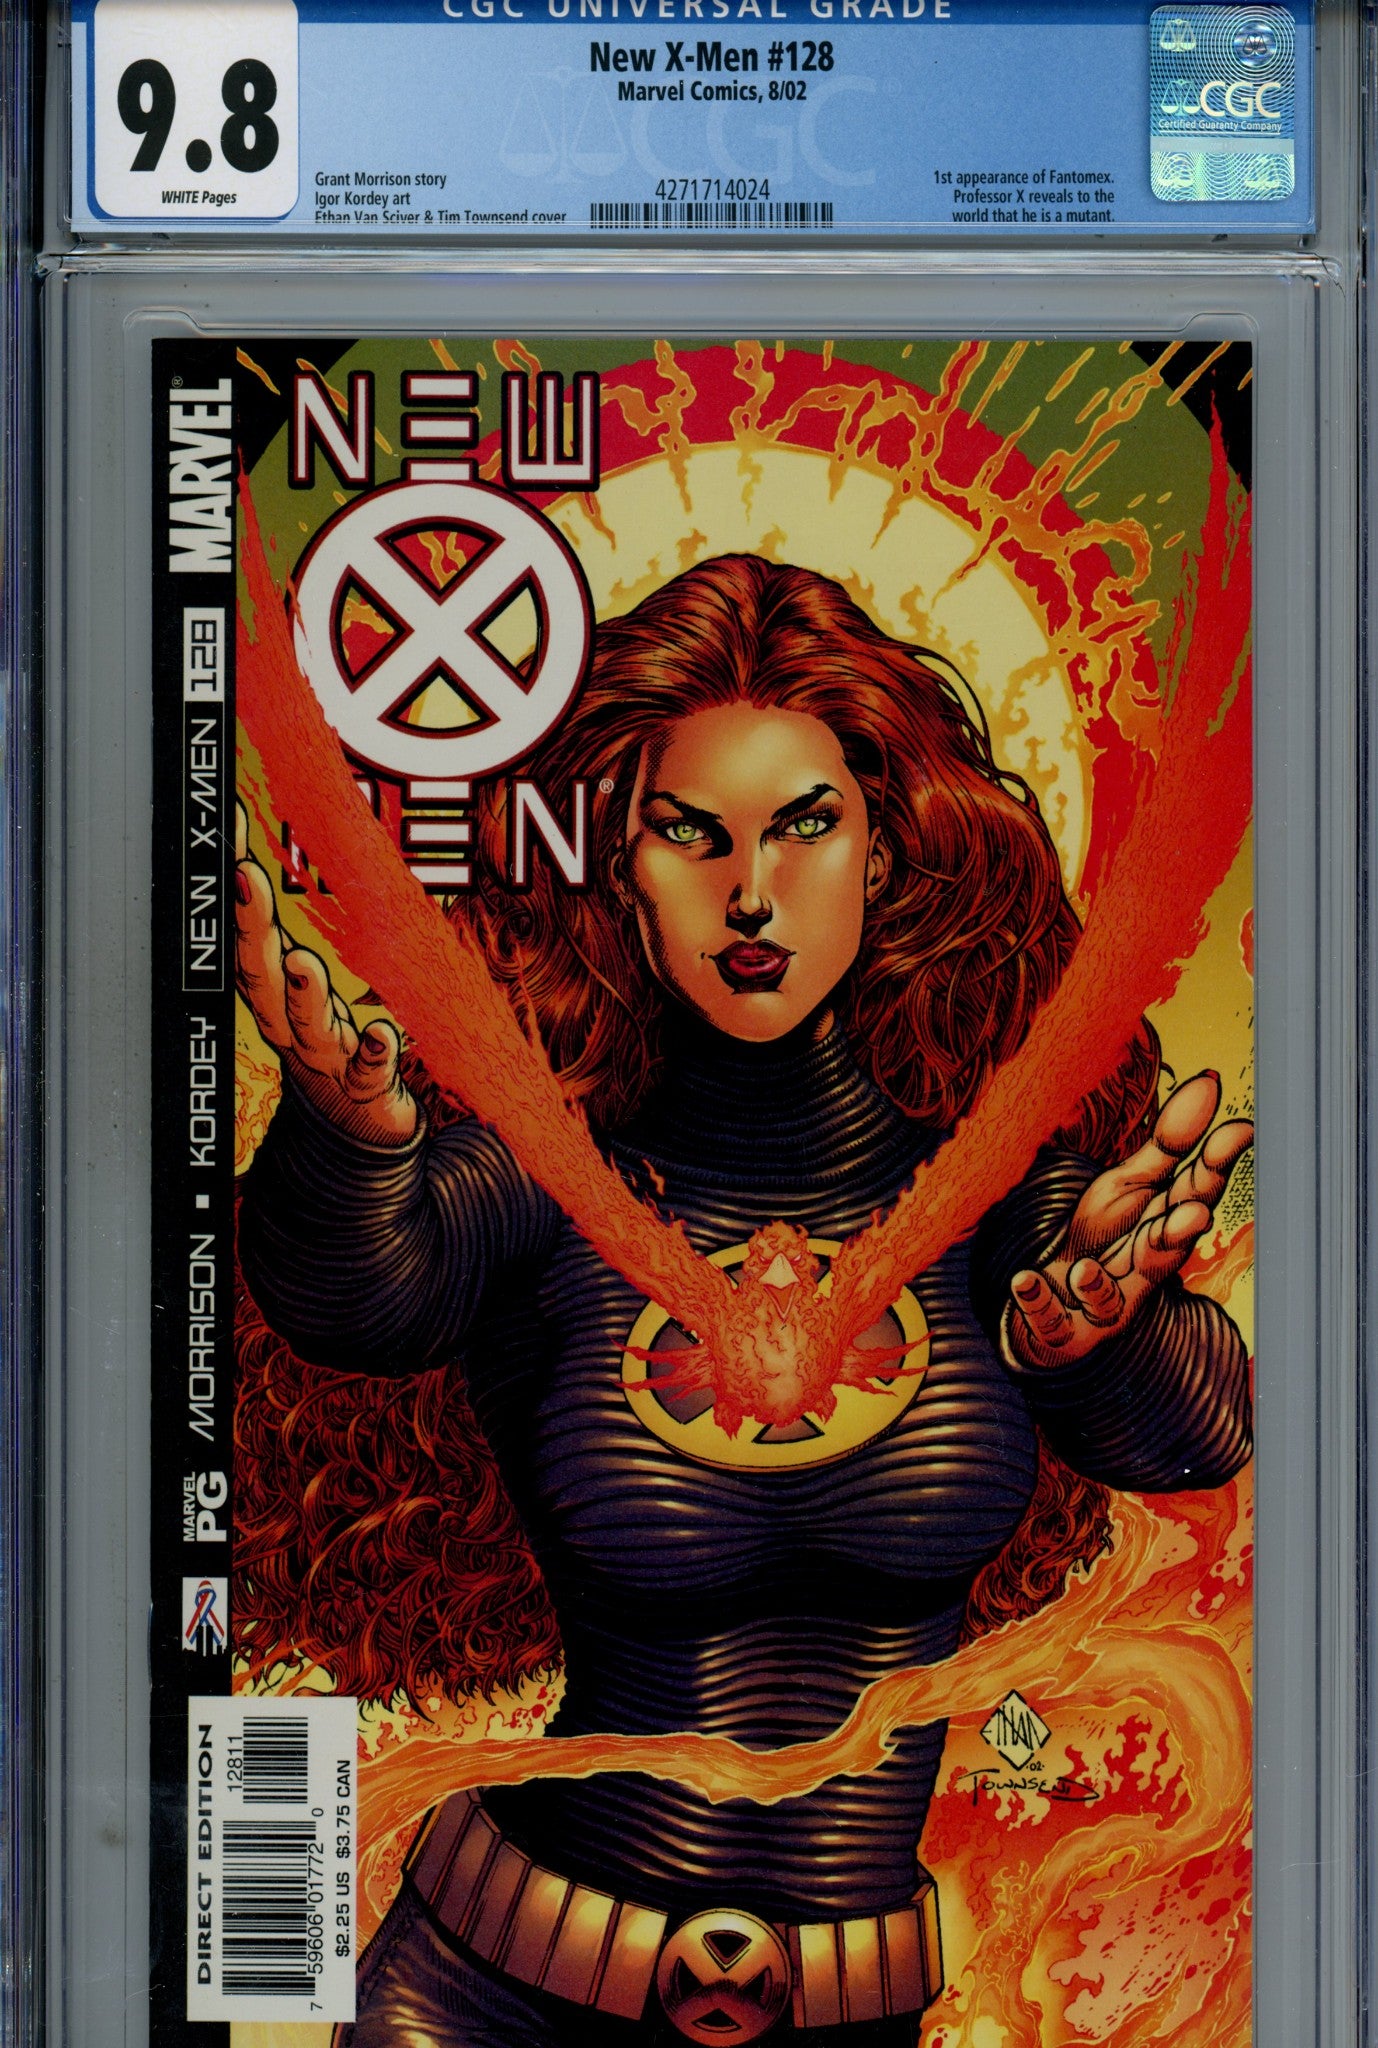 New X-Men Vol 1 128 9.8 (2002)